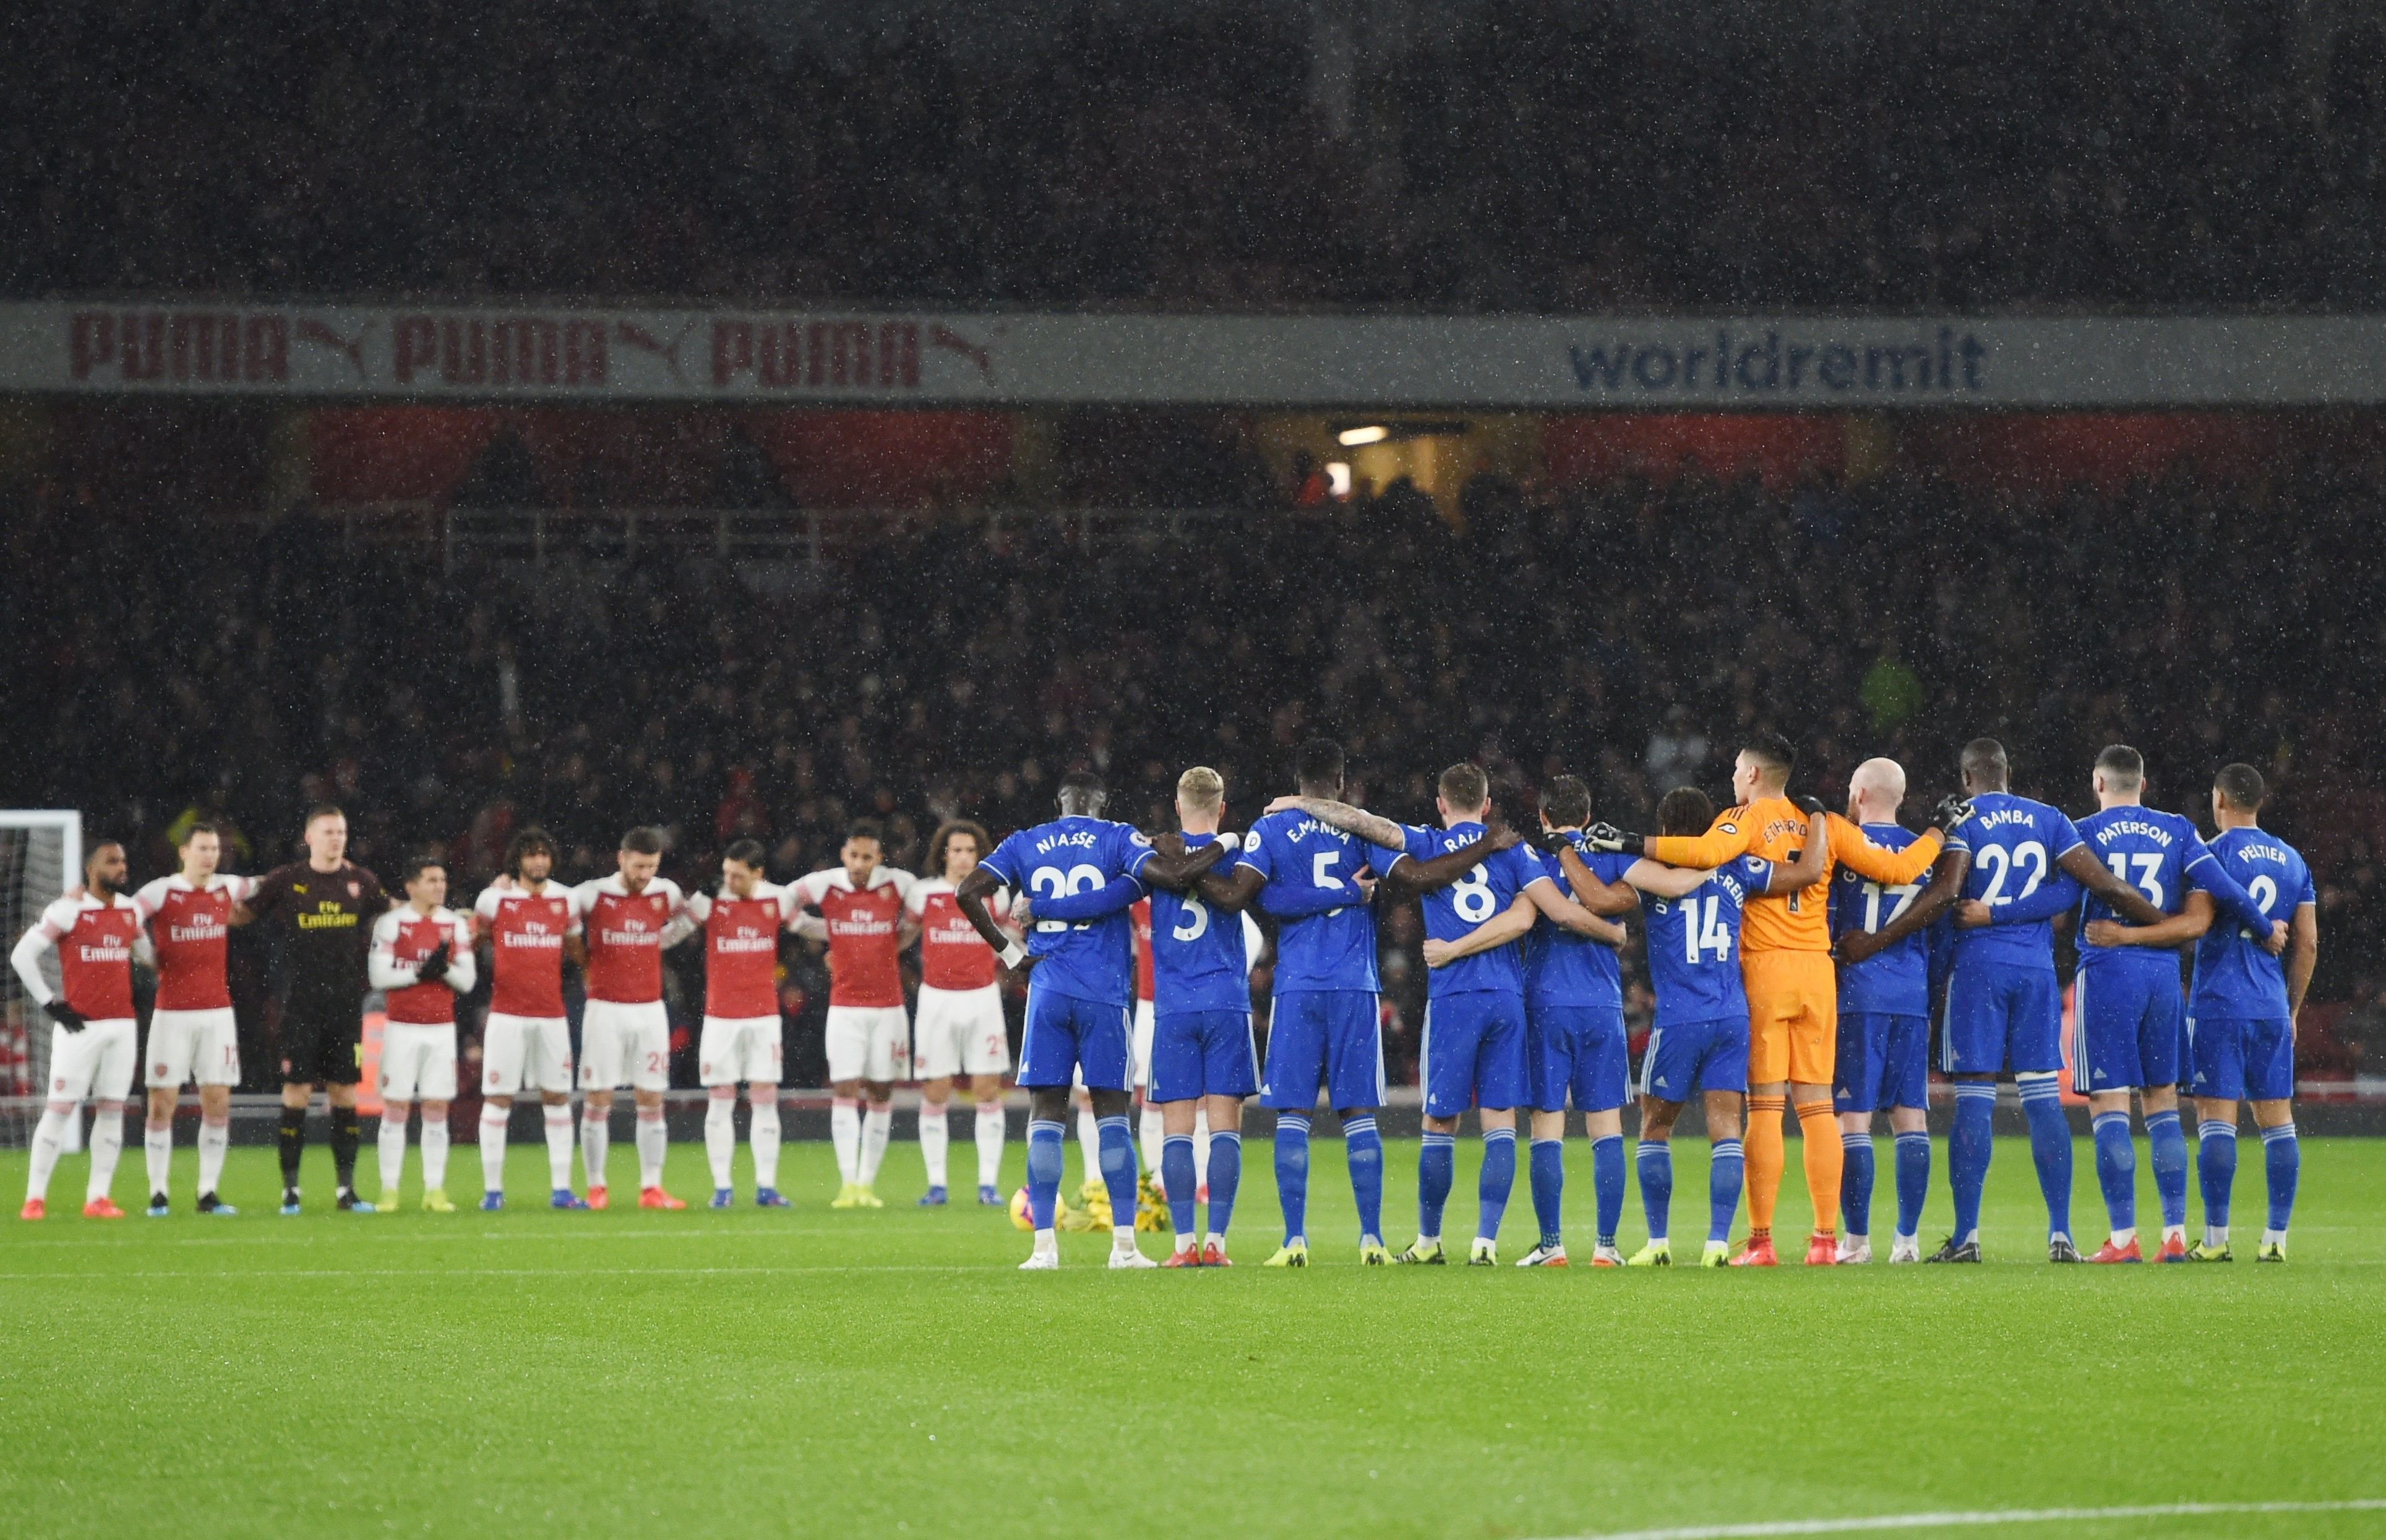 Emotivo homenaje al futbolista desaparecido en el partido entre el Arsenal y el Cardiff